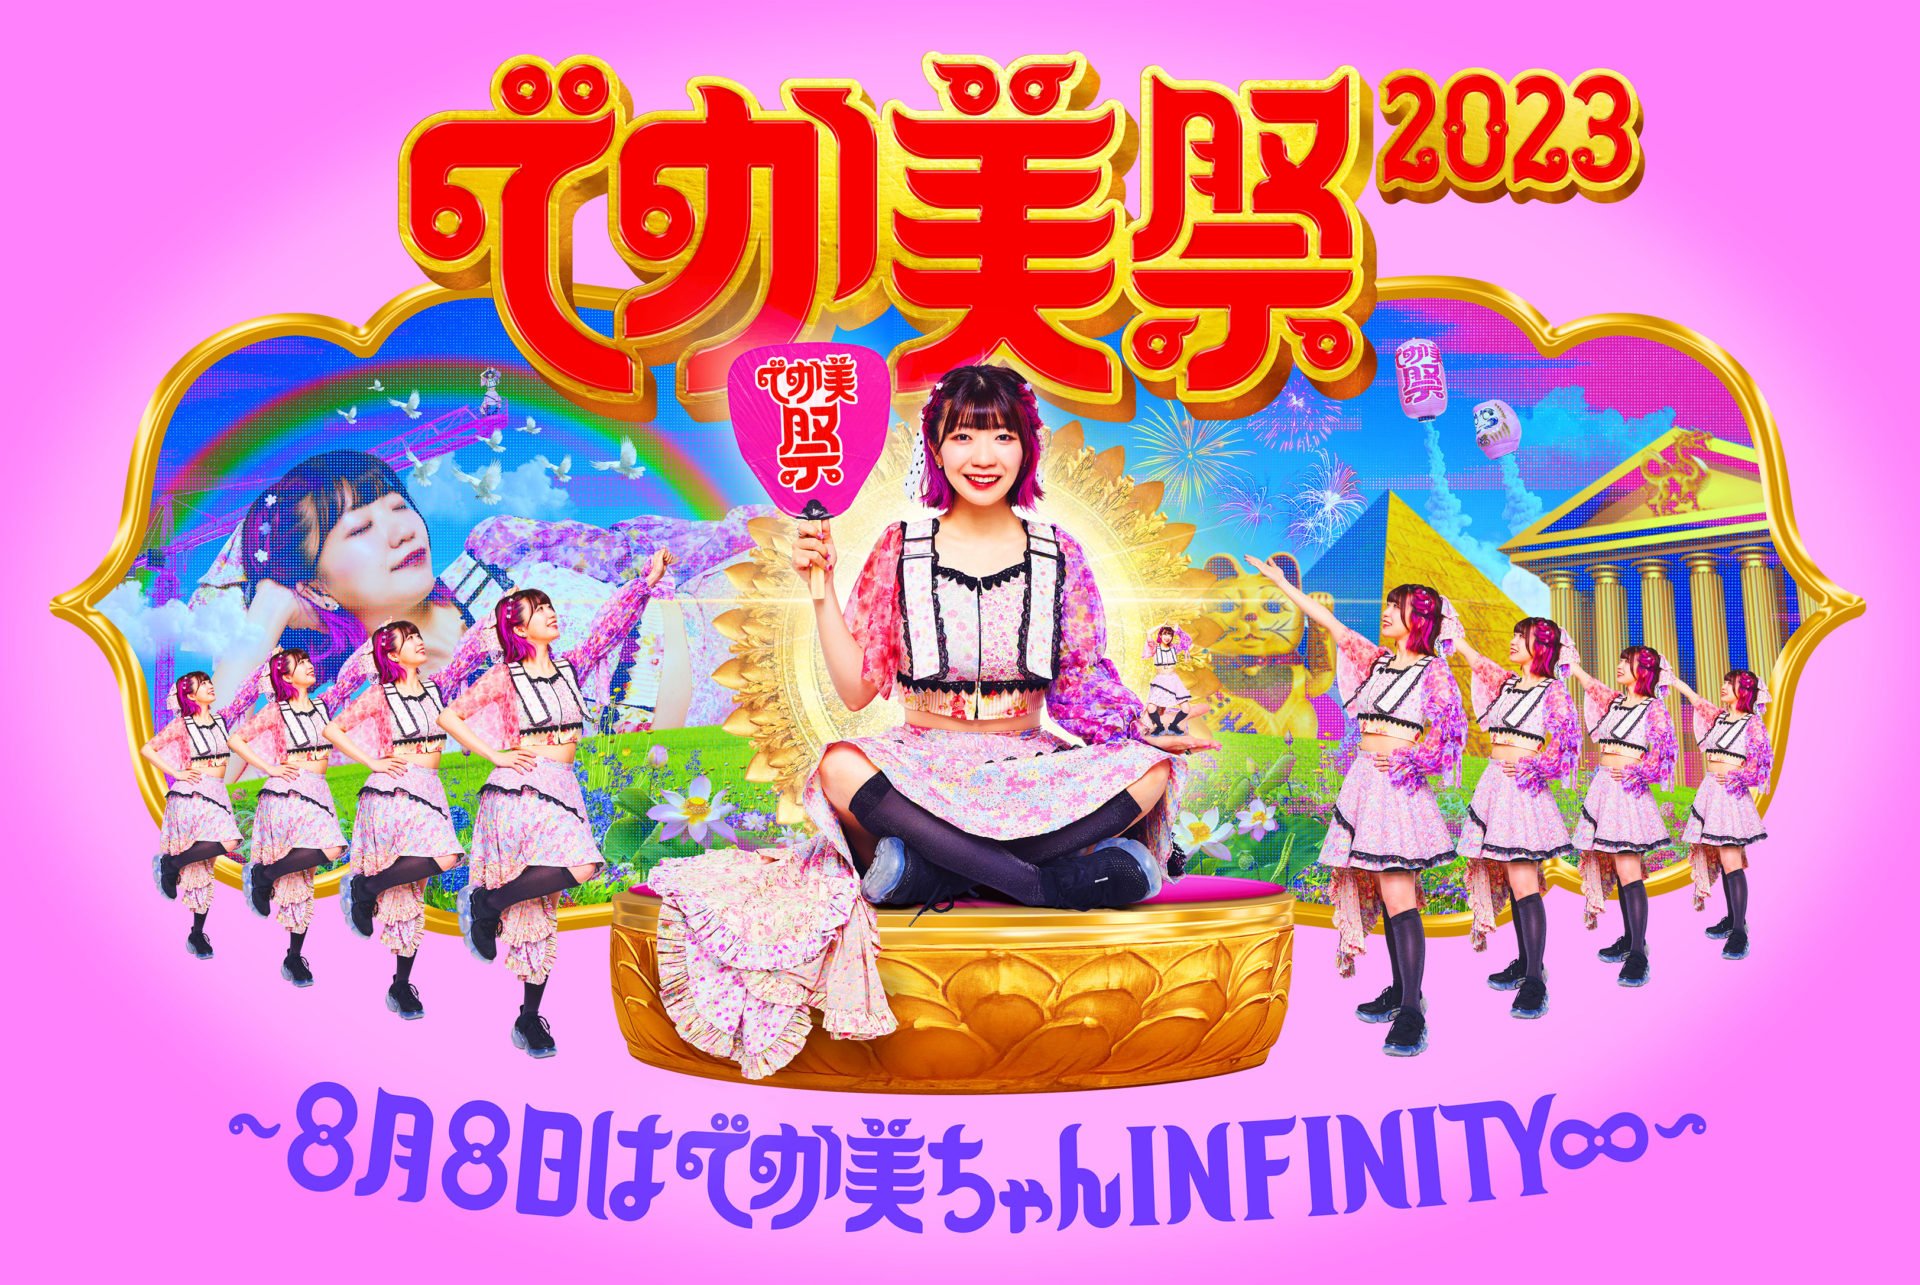 でか美祭2023〜8月8日はでか美ちゃんINFINITY∞〜